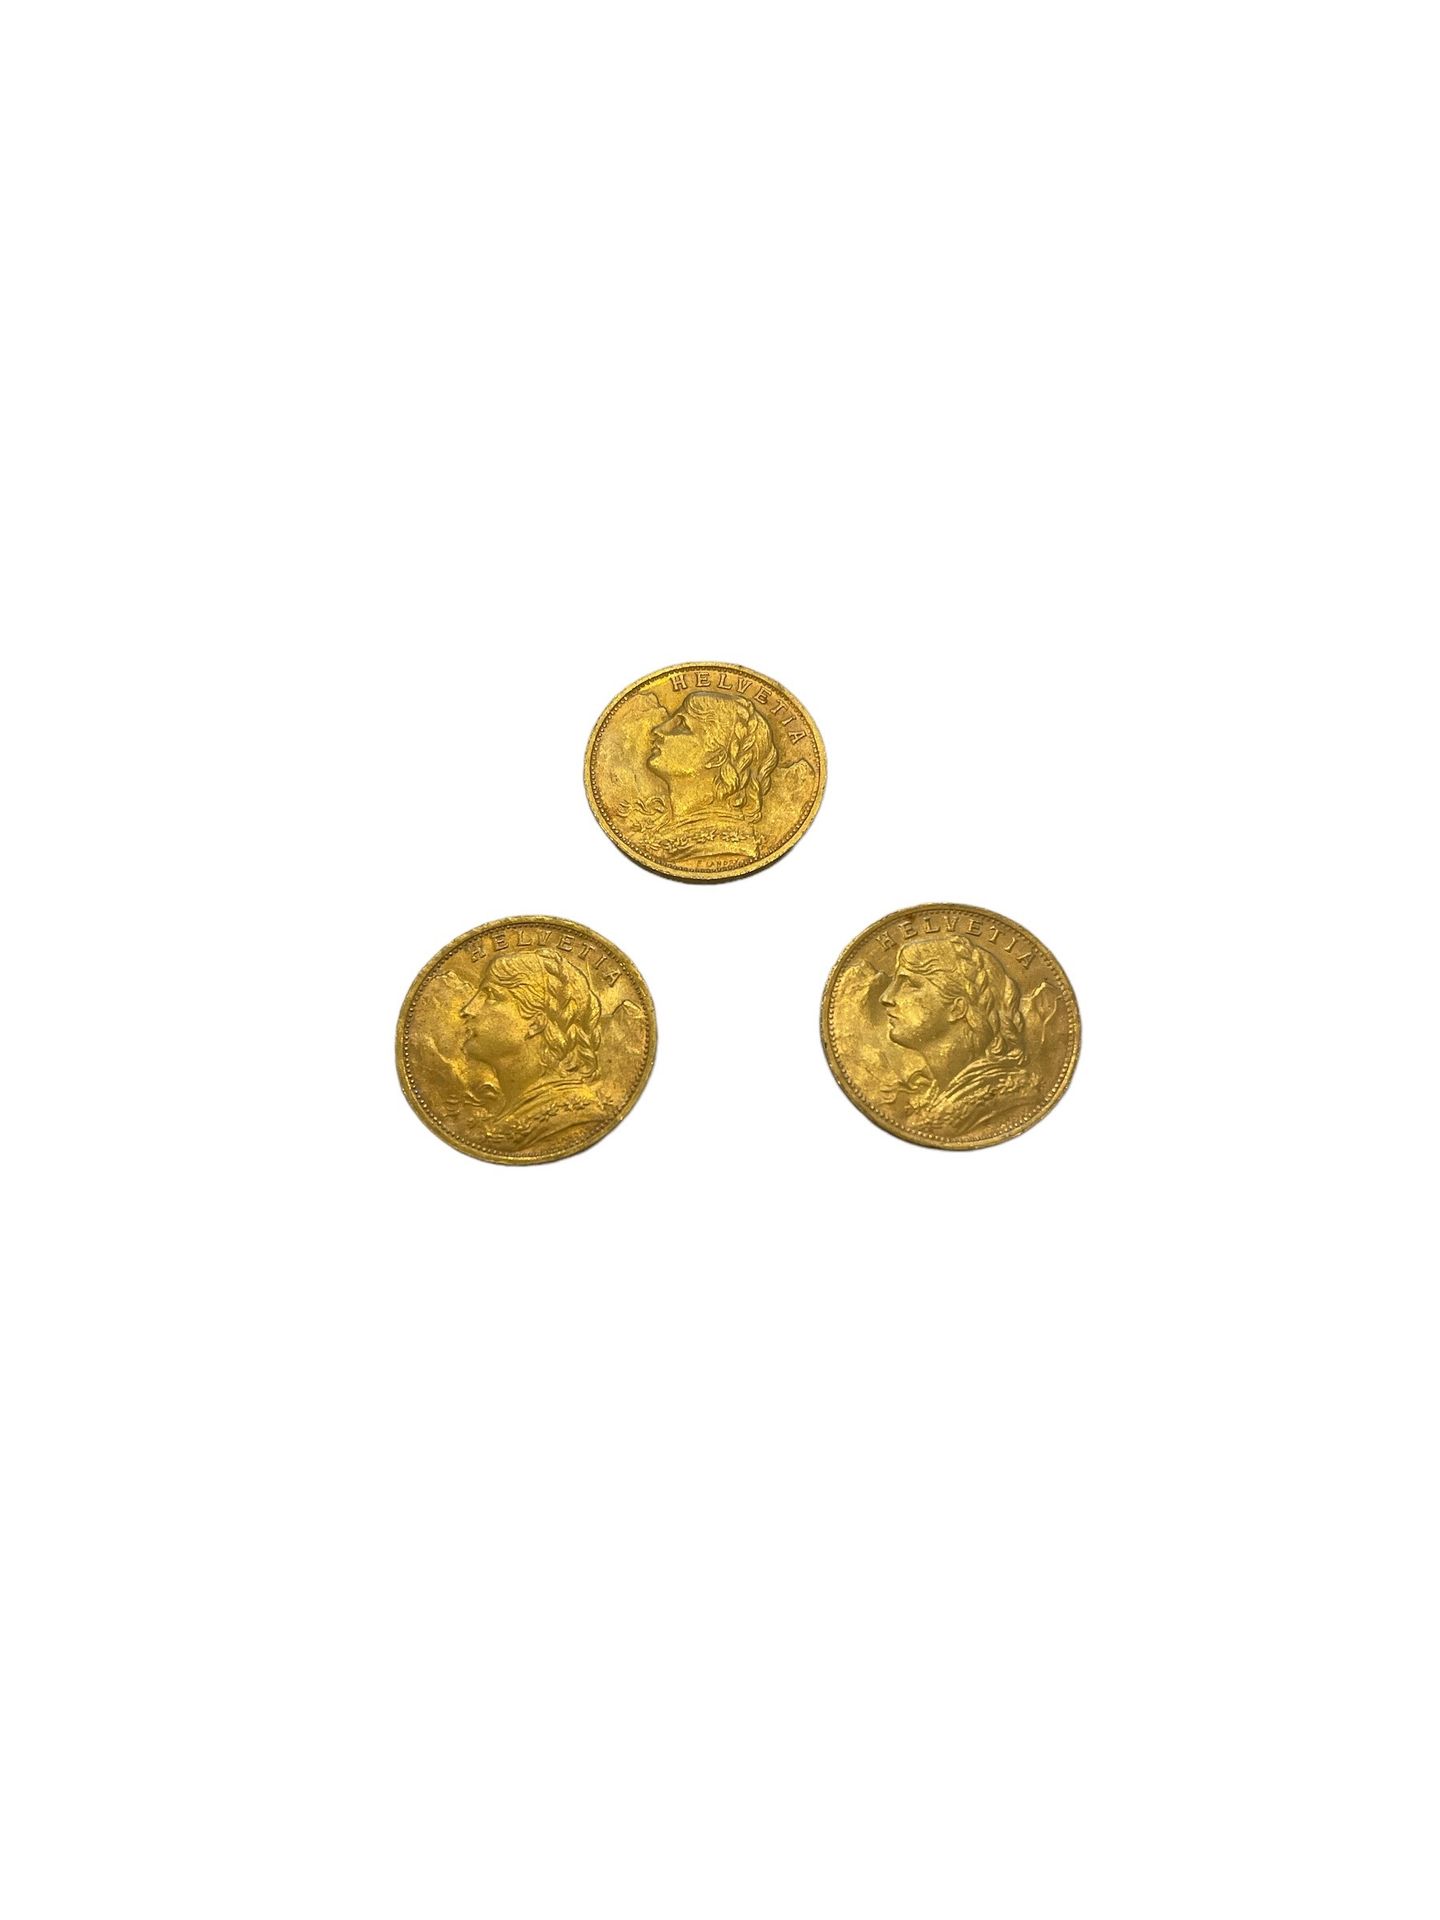 Null SCHWEIZ
3 Münzen 20 Franken Gold
Gewicht: 19.3 g